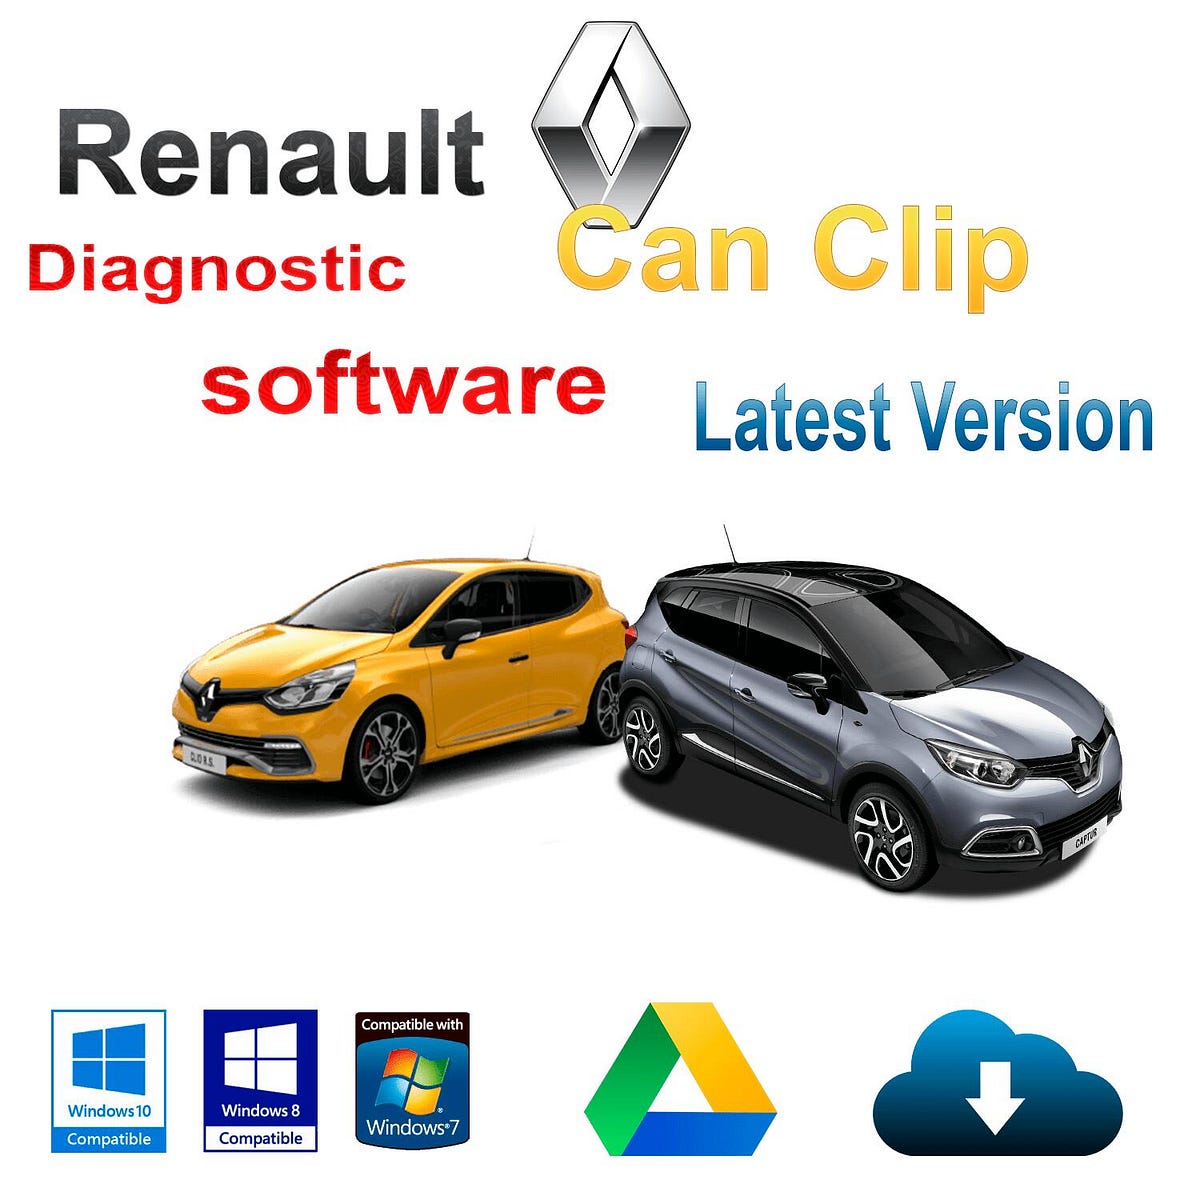 Como activar Canclip de Renault en windows 